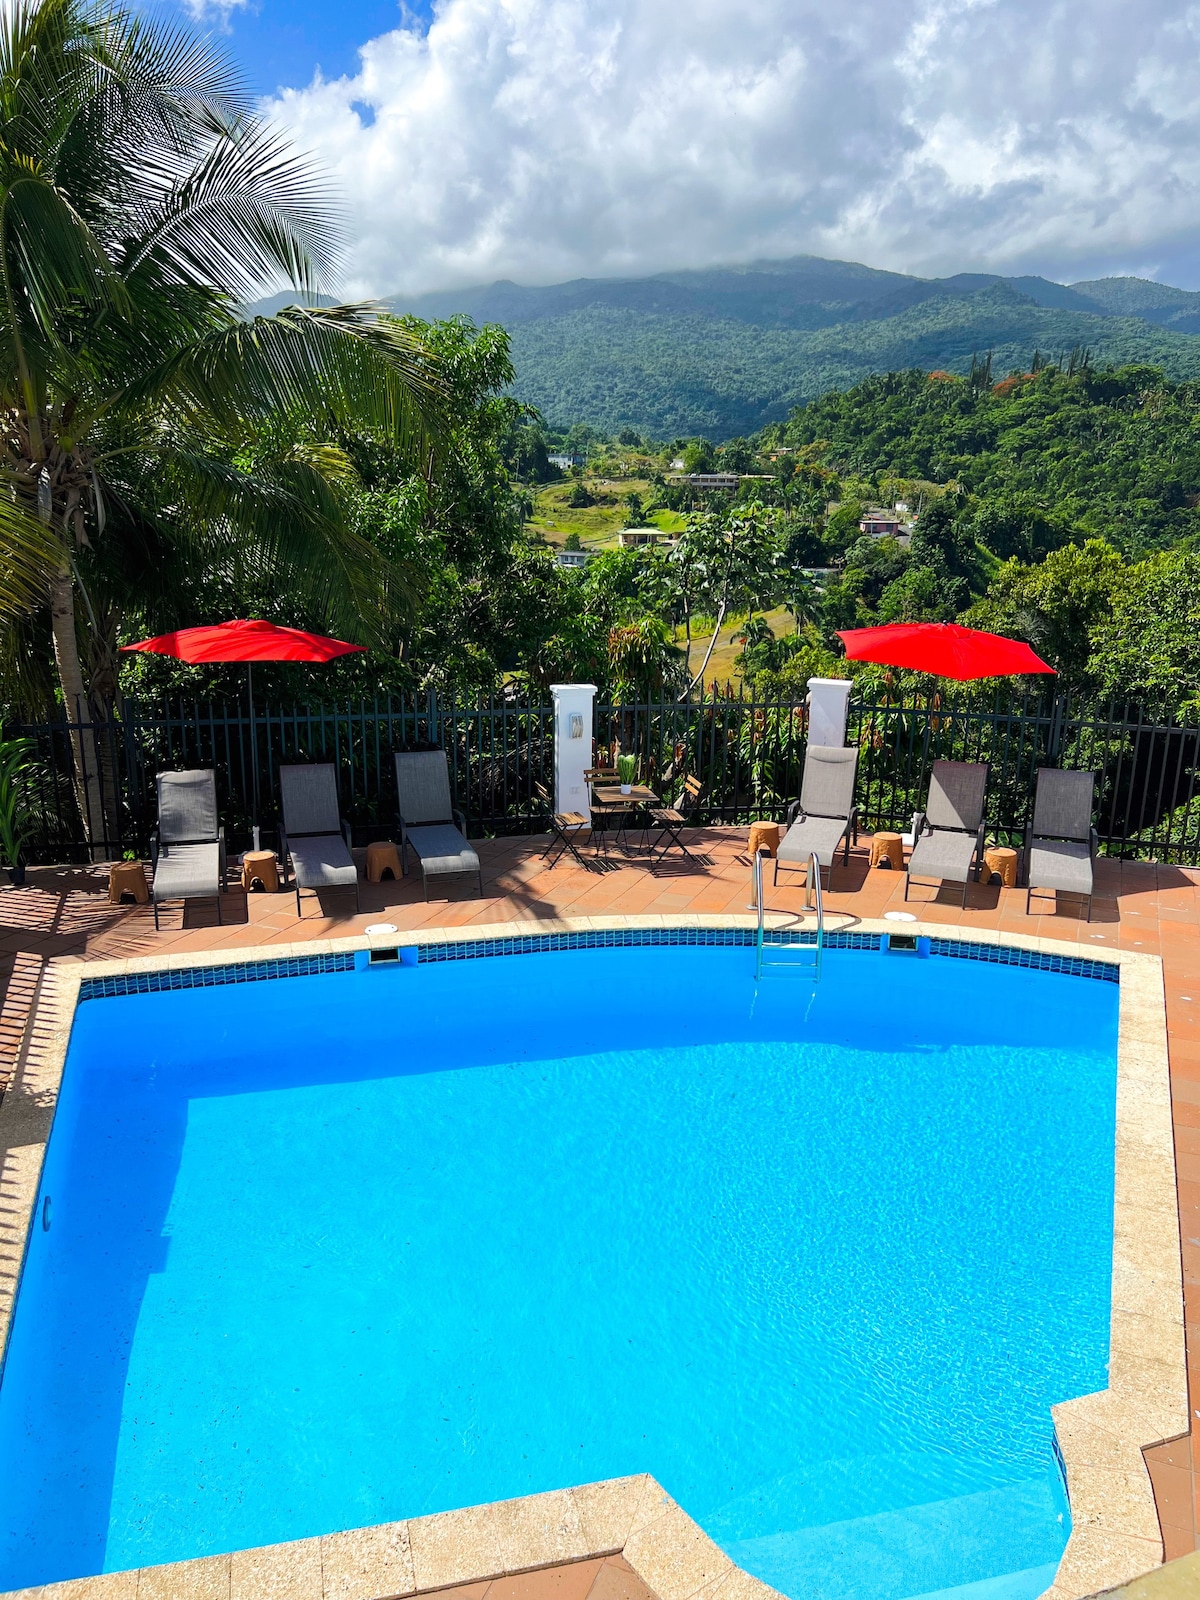 # 1、游泳池、El Yunque景观、租金七折、0费用